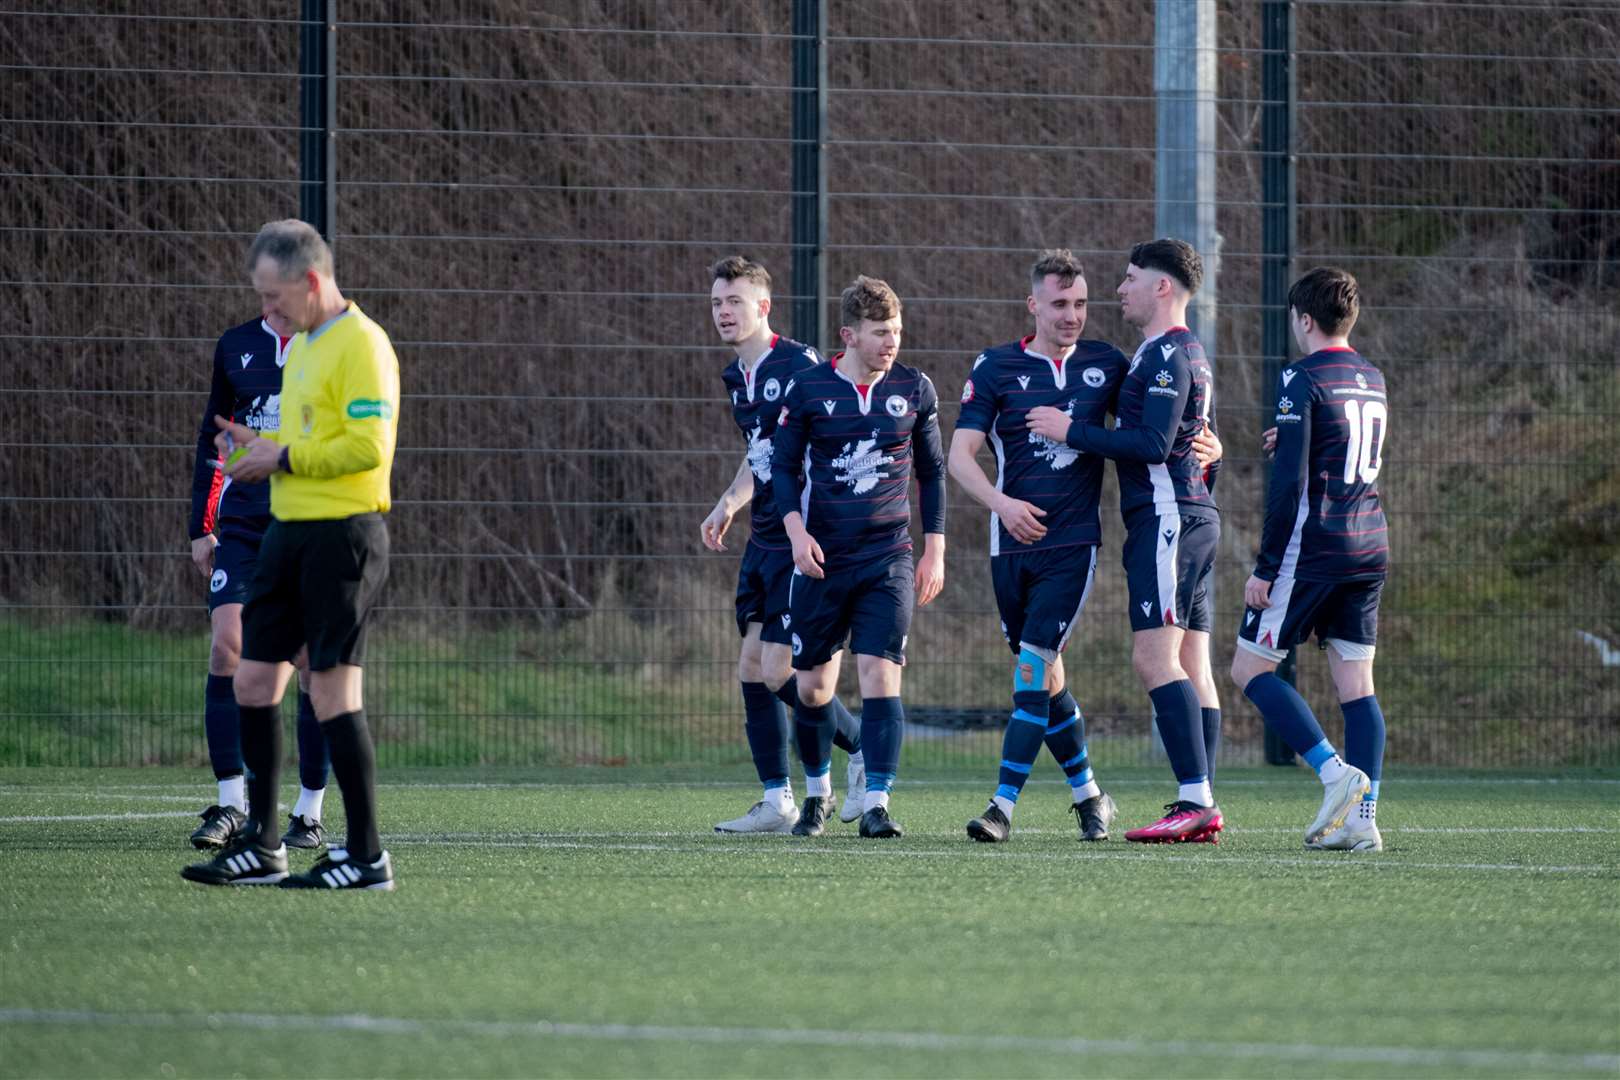 Inverness Athletic won 13-0. Picture: Callum Mackay